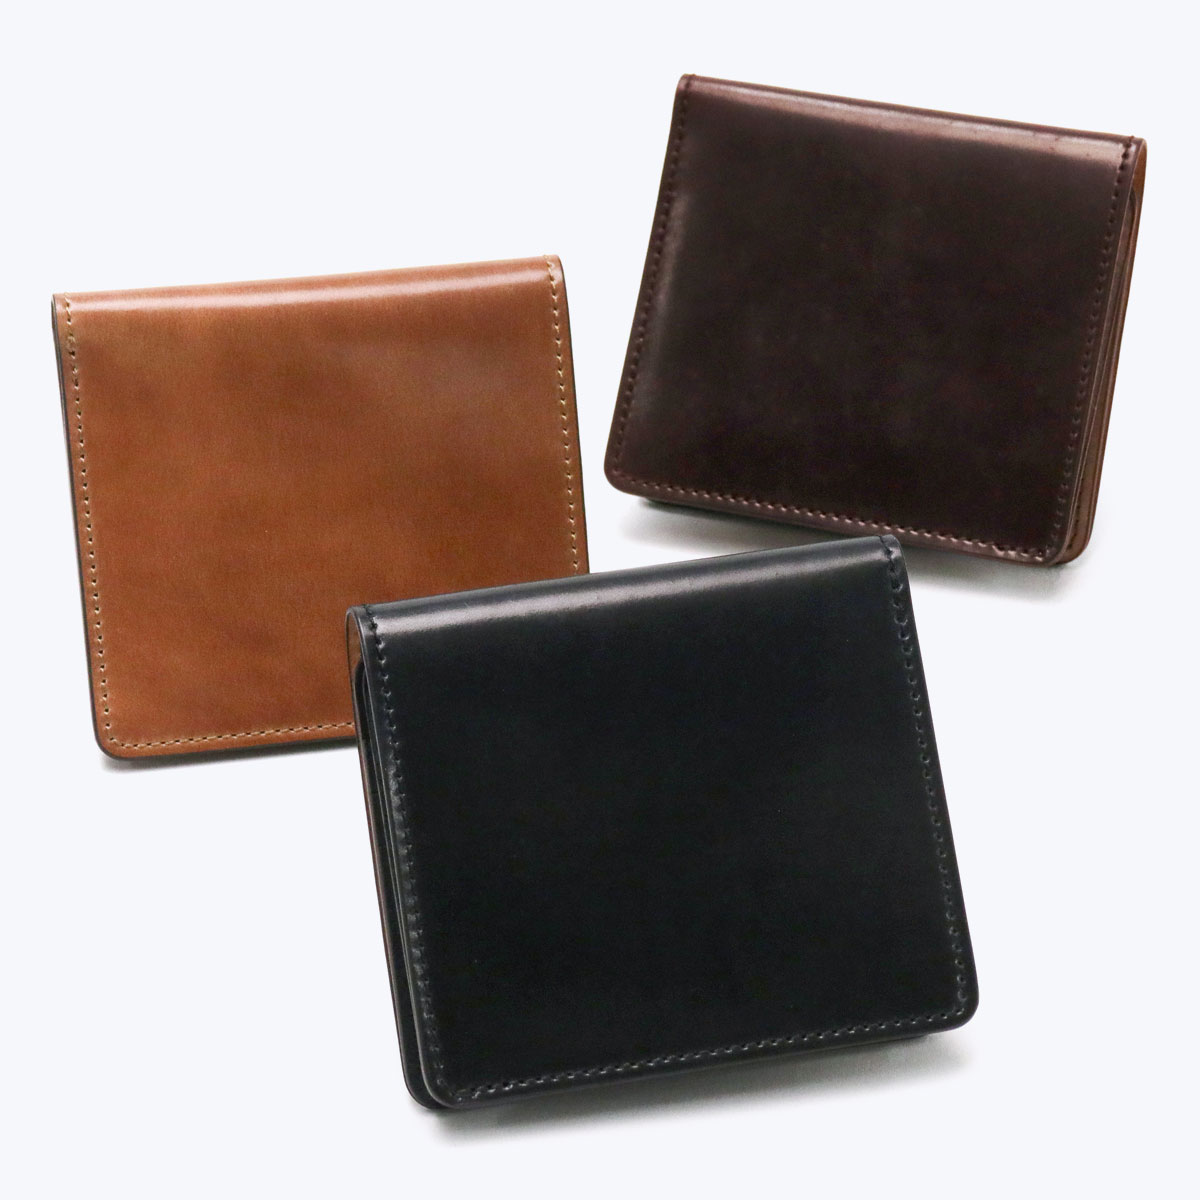 最大32%★5/12限定 スロウ 財布 SLOW cordovan smart mini wallet 二つ折り財布 小さい 薄マチ 本革 コードバン  レザー 軽量 日本製 メンズ レディース SO843K